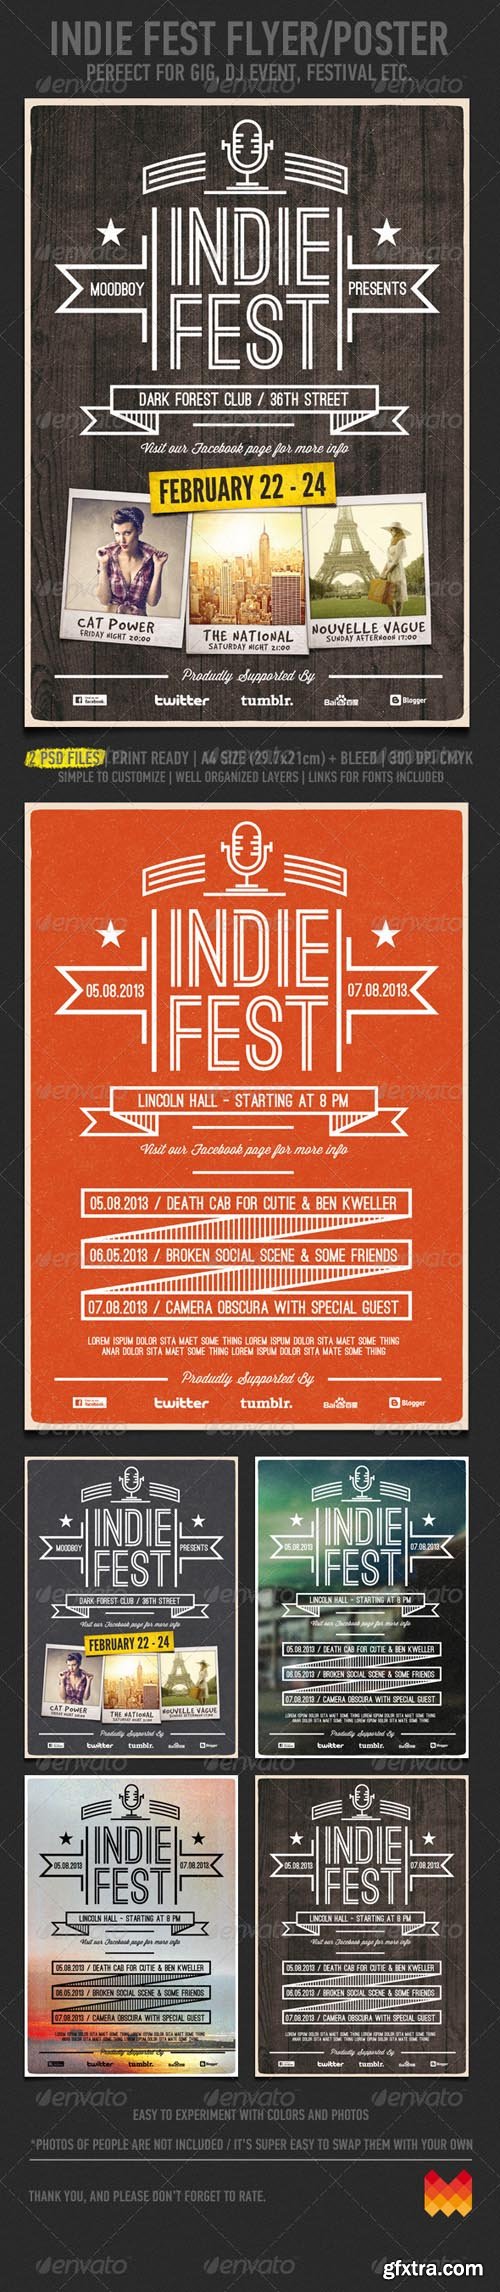 GR - Indie Fest V.03 Flyer / Poster 4173461